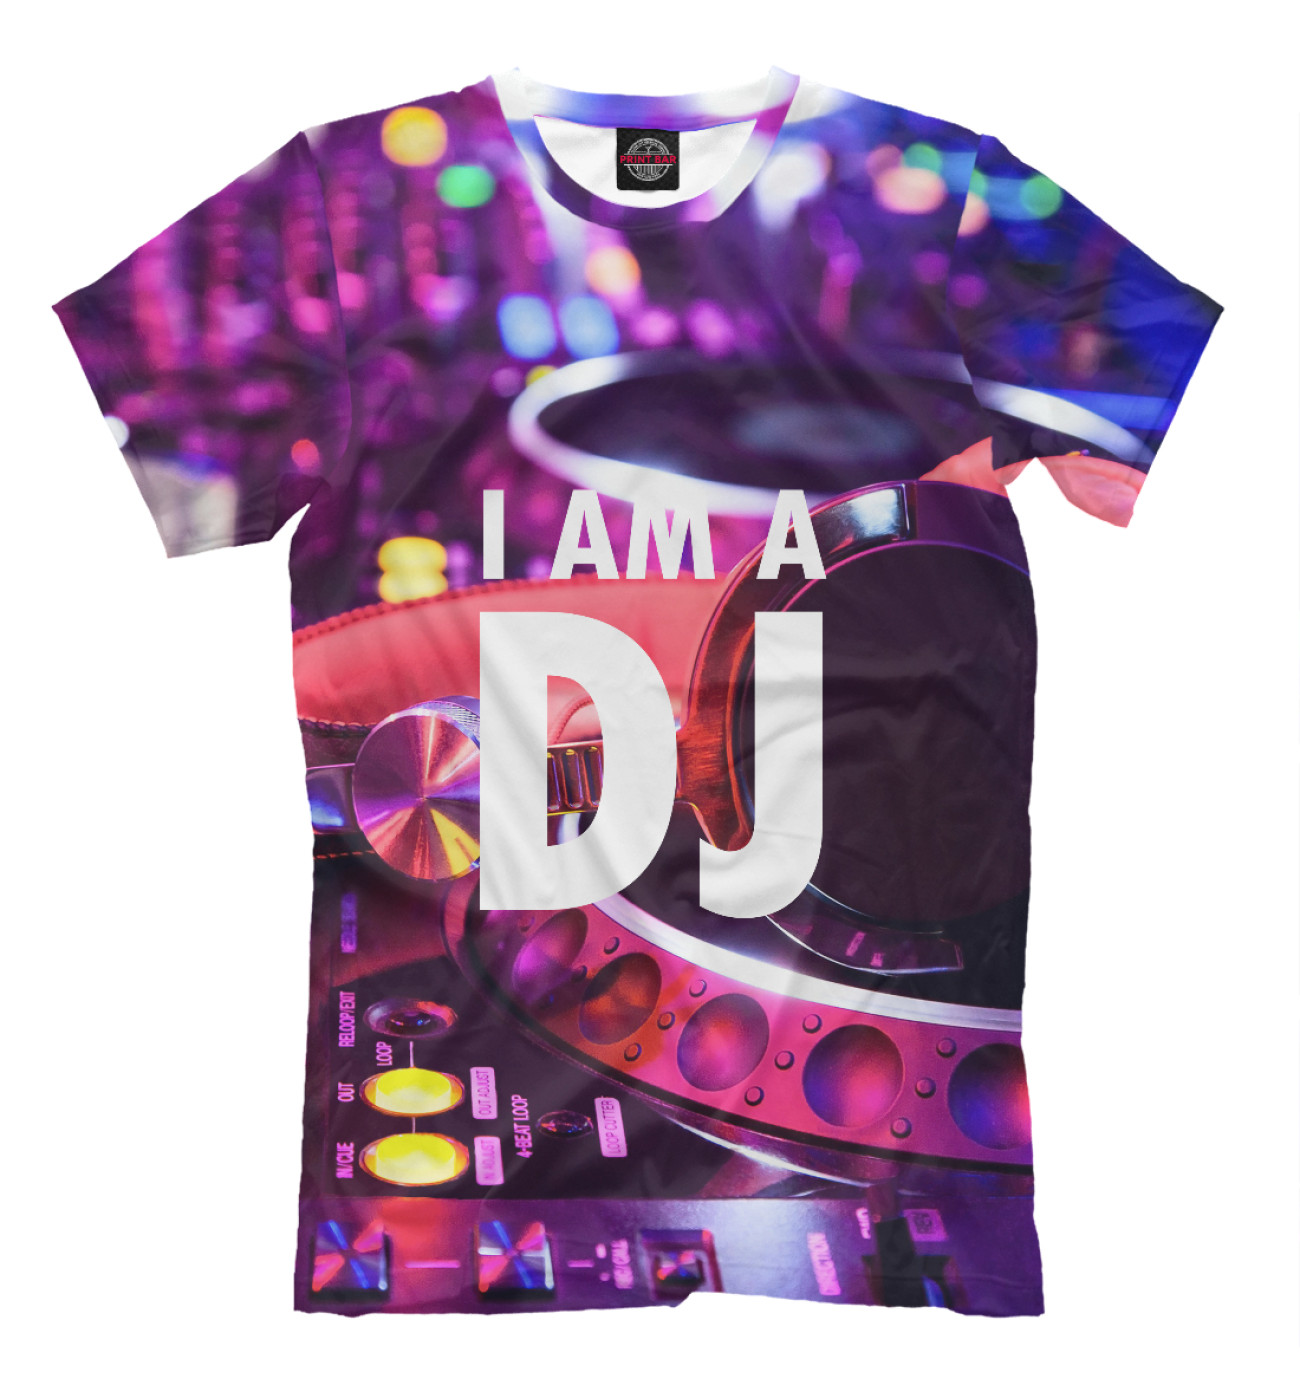 Мужская Футболка I am a DJ, артикул: DJS-994752-fut-2